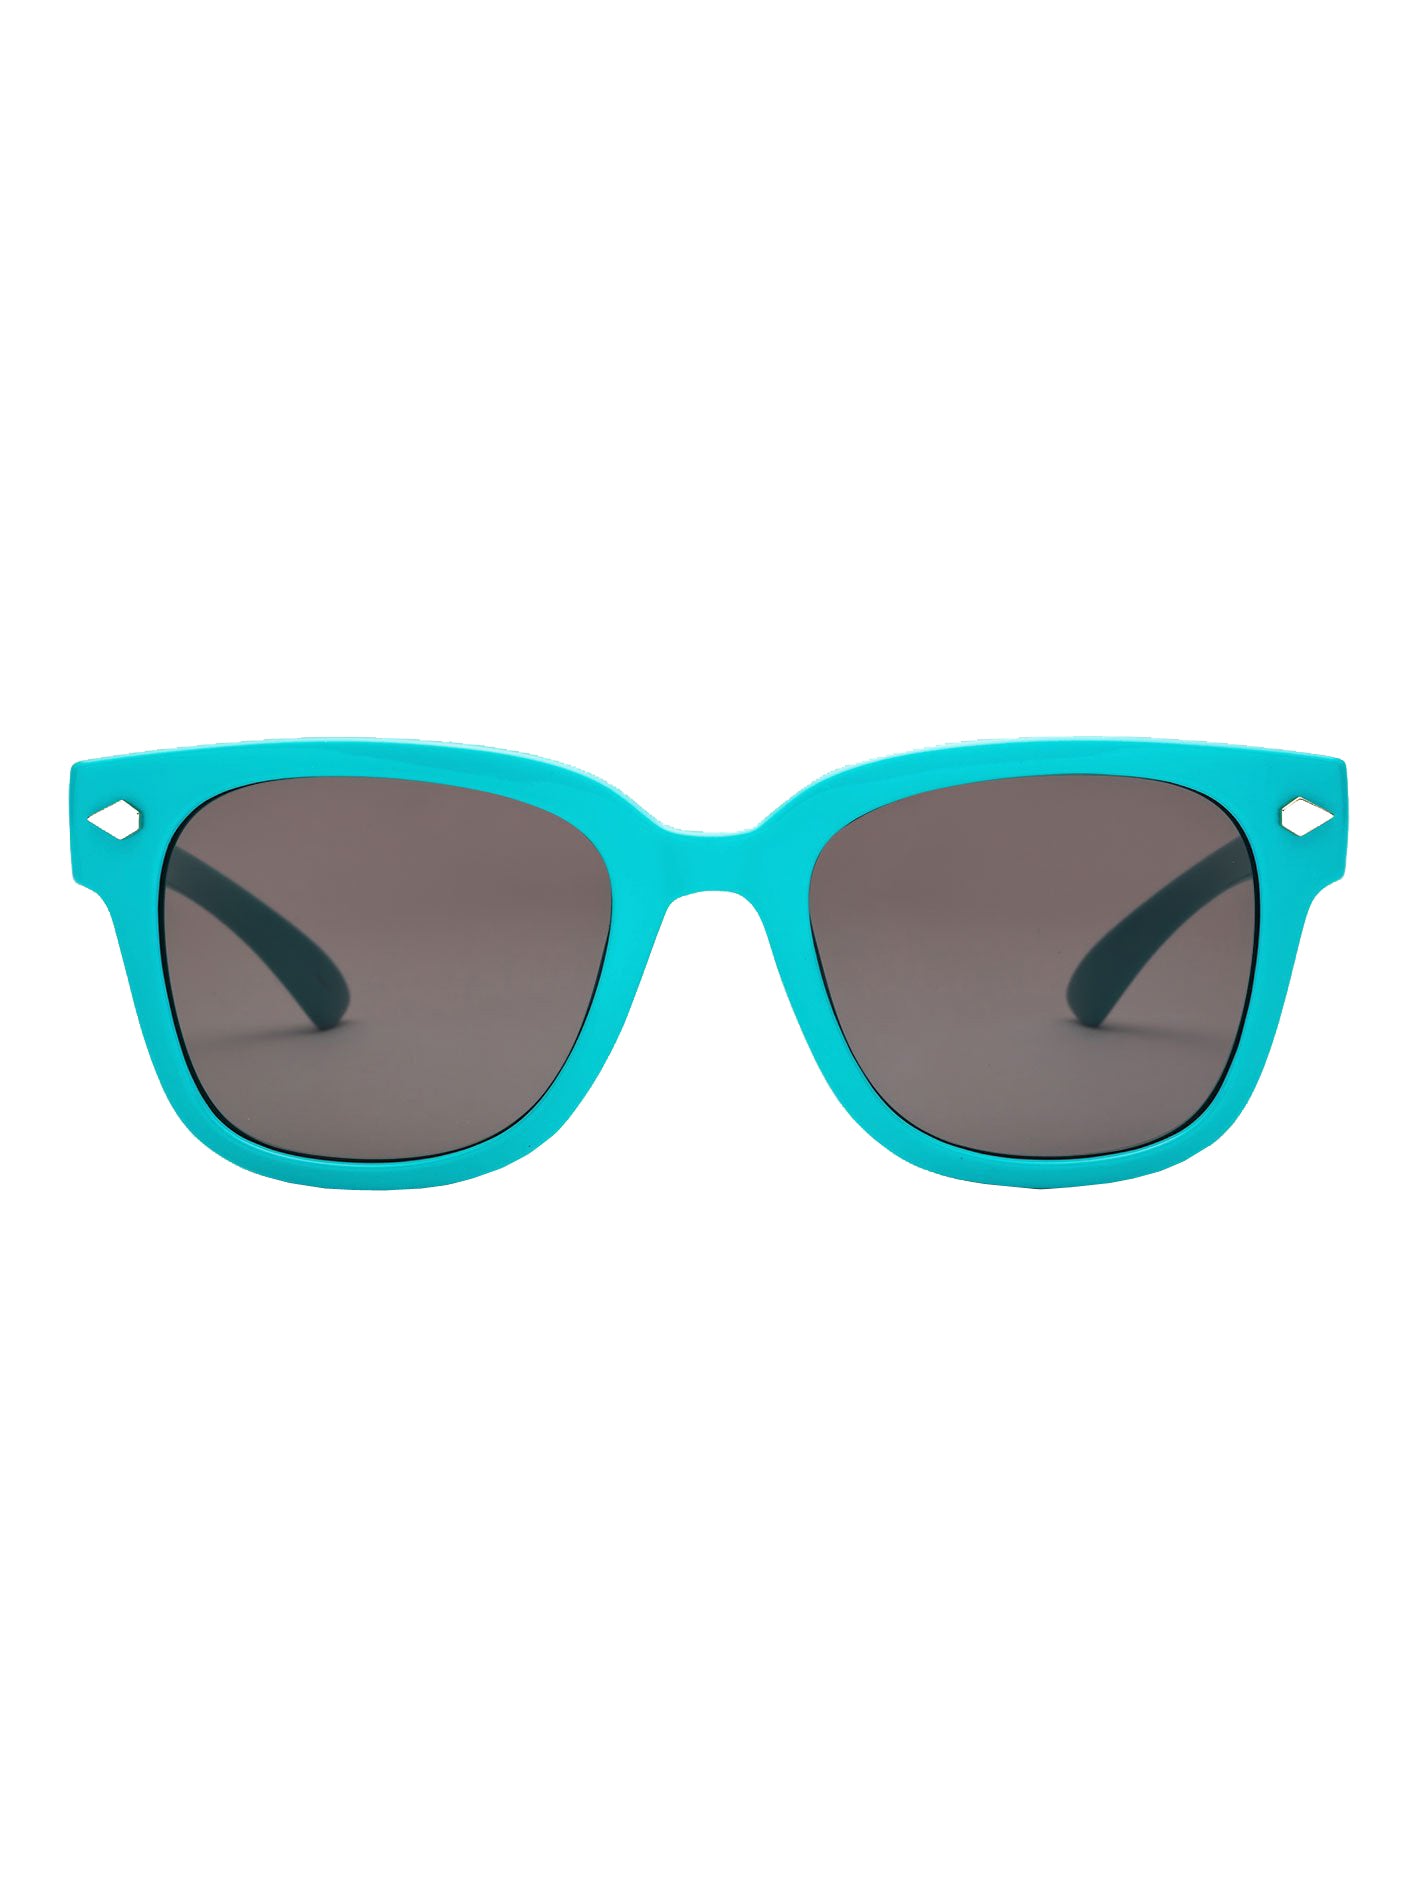 Volcom Freestyle Sunglasses  GlossAqua Gray Square